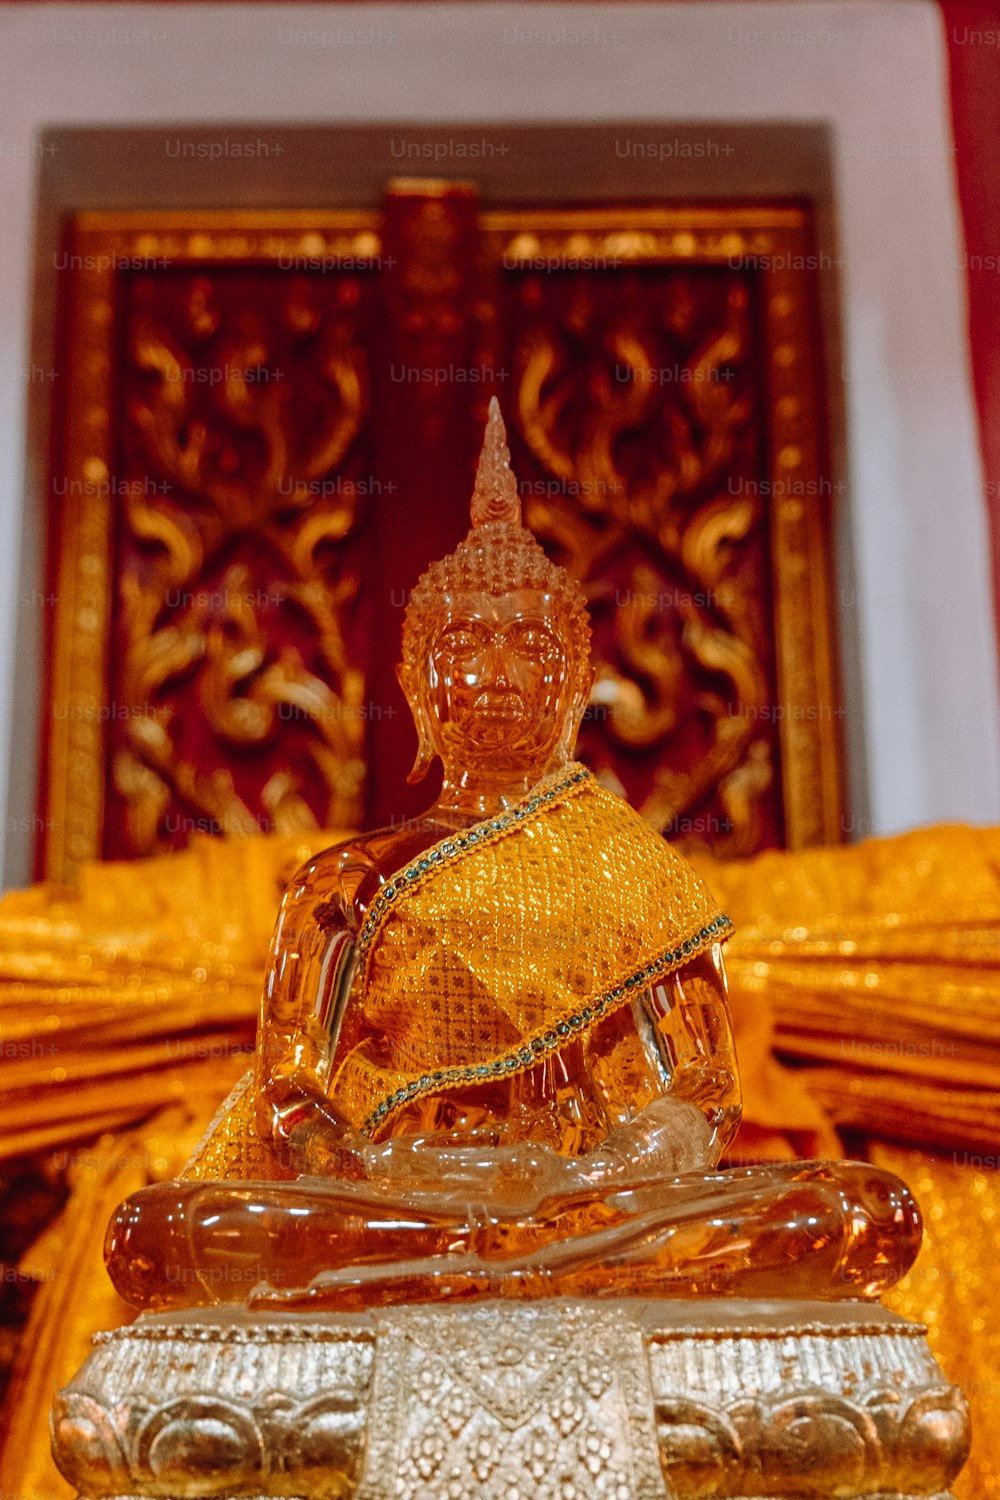 una estatua de una persona sentada en una posición de meditación